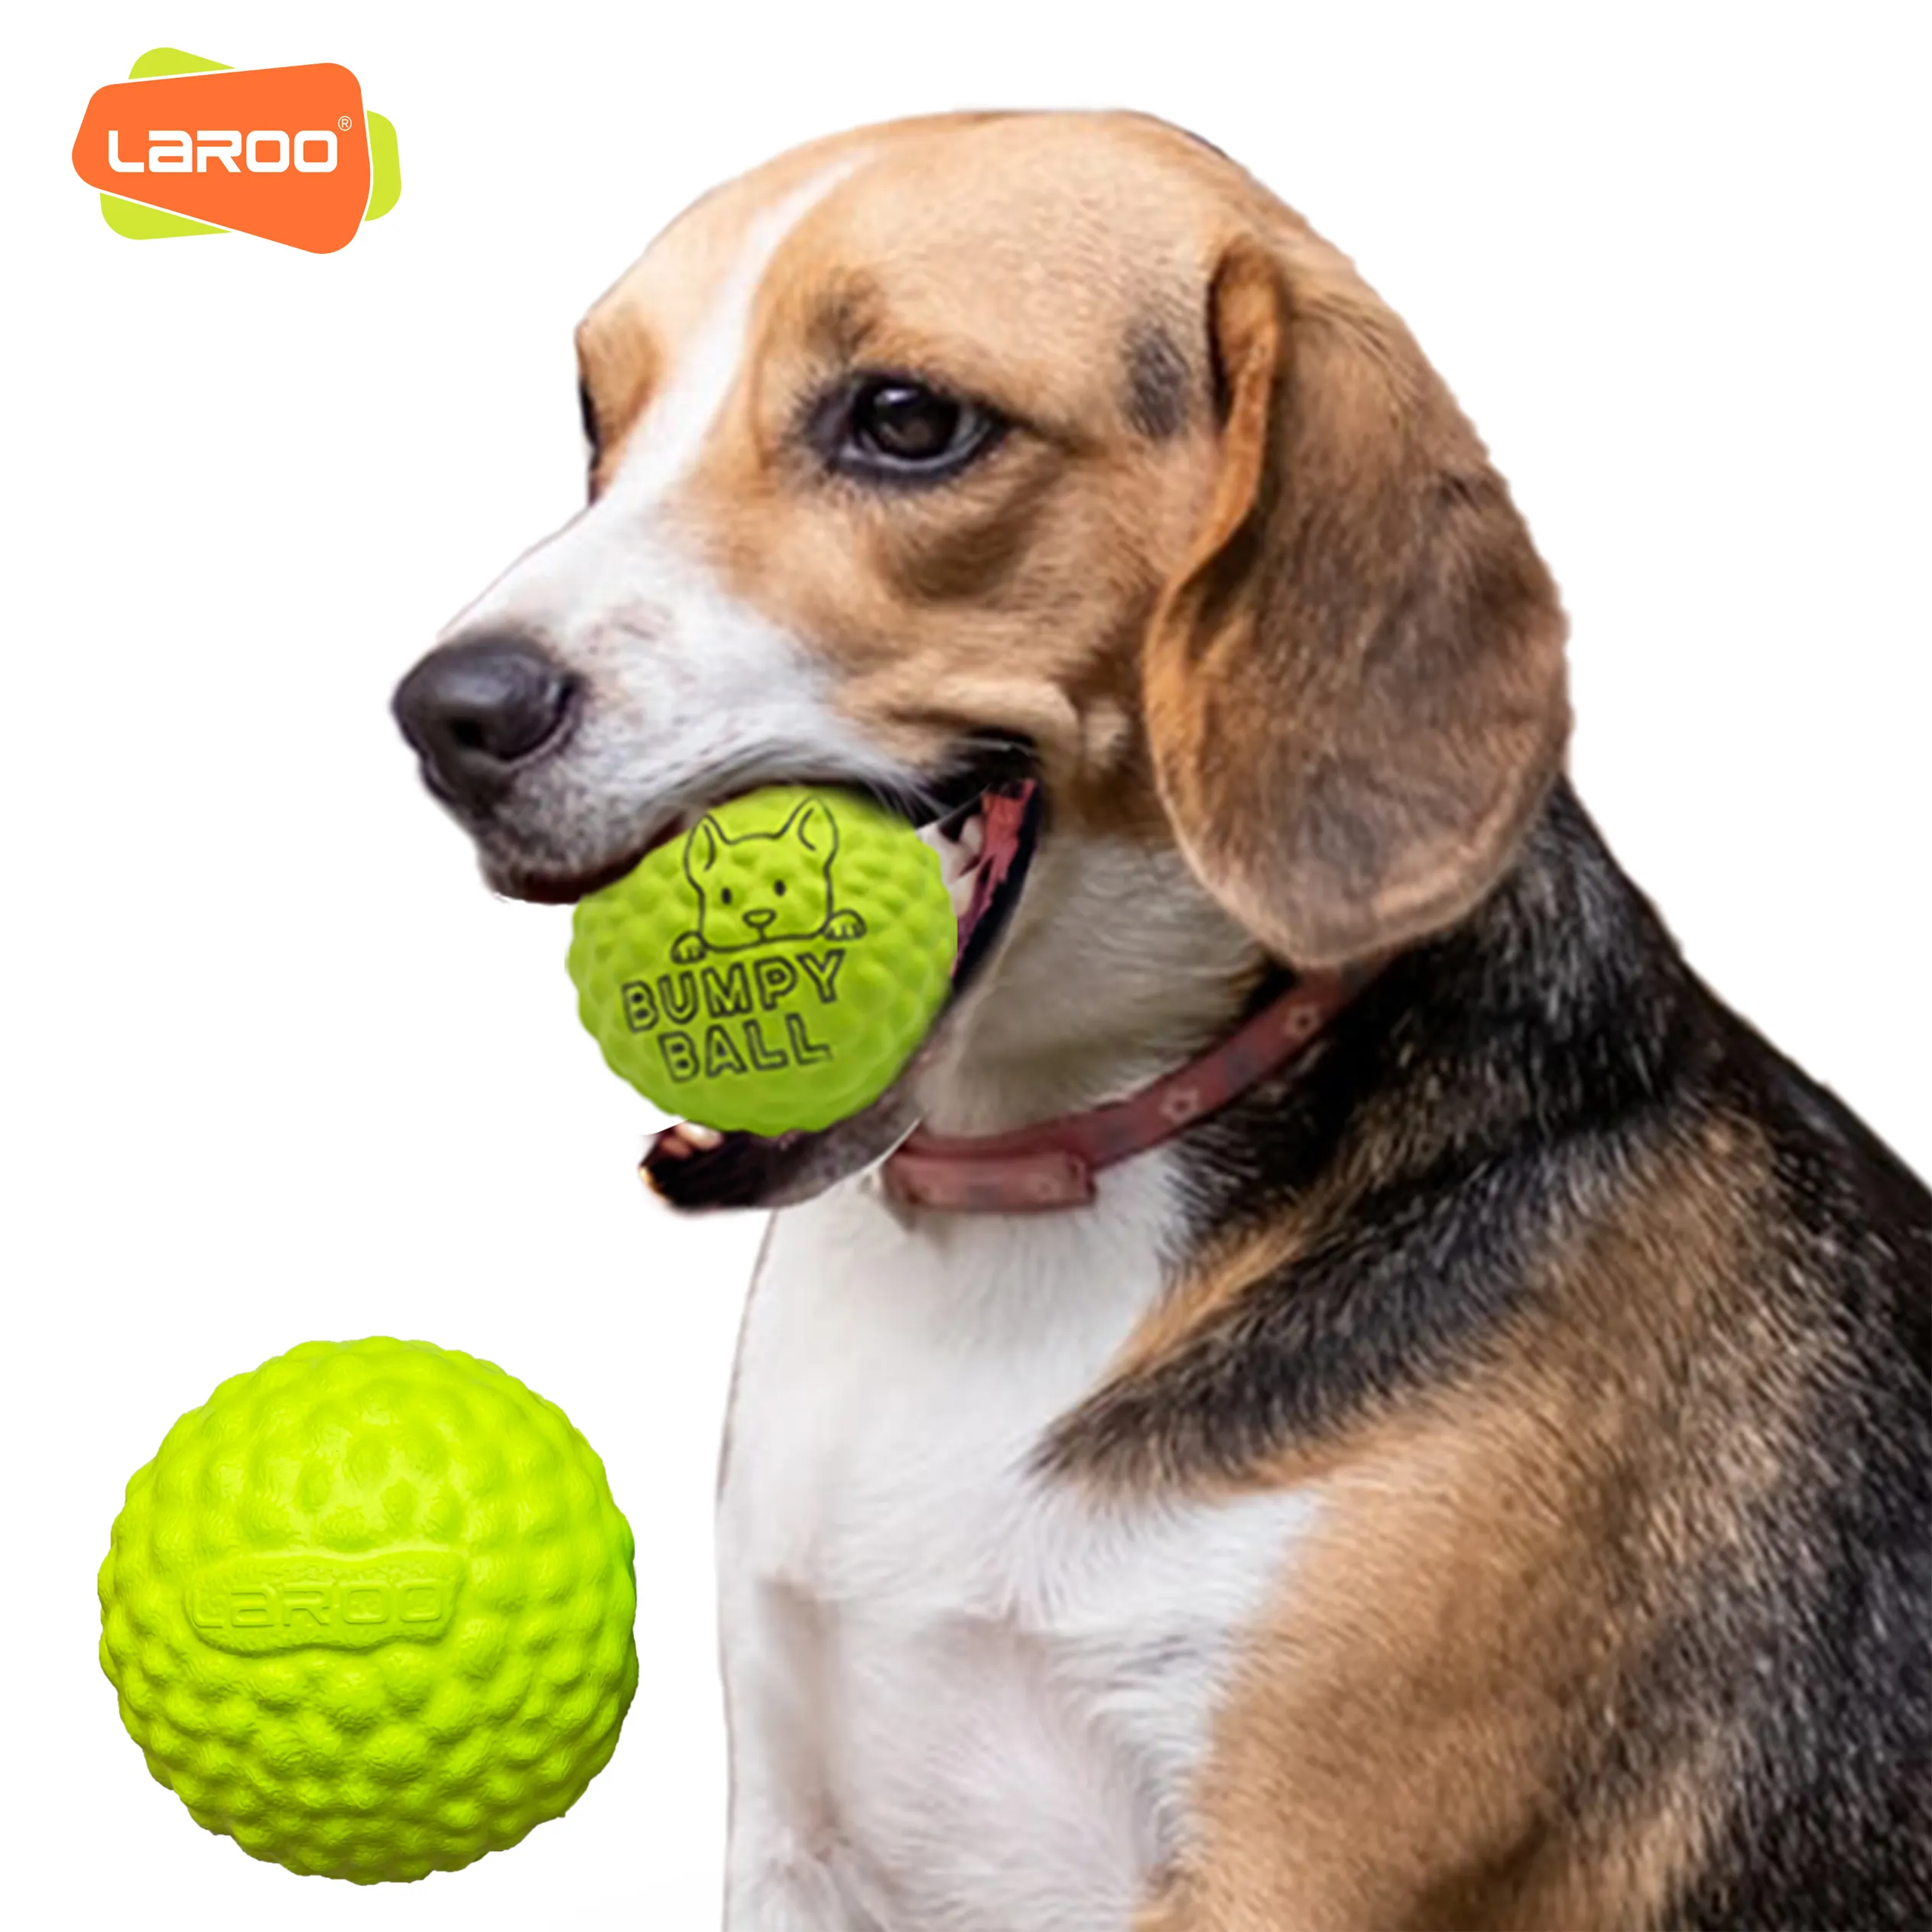 LaRoo कुत्ते खिलौना पालतू उछल गेंद ईवा सामग्री चबाना खिलौने काटने प्रतिरोधी दाढ़ टेनिस ला रहा है खेल चिंता को राहत देने के लिए उपयुक्त